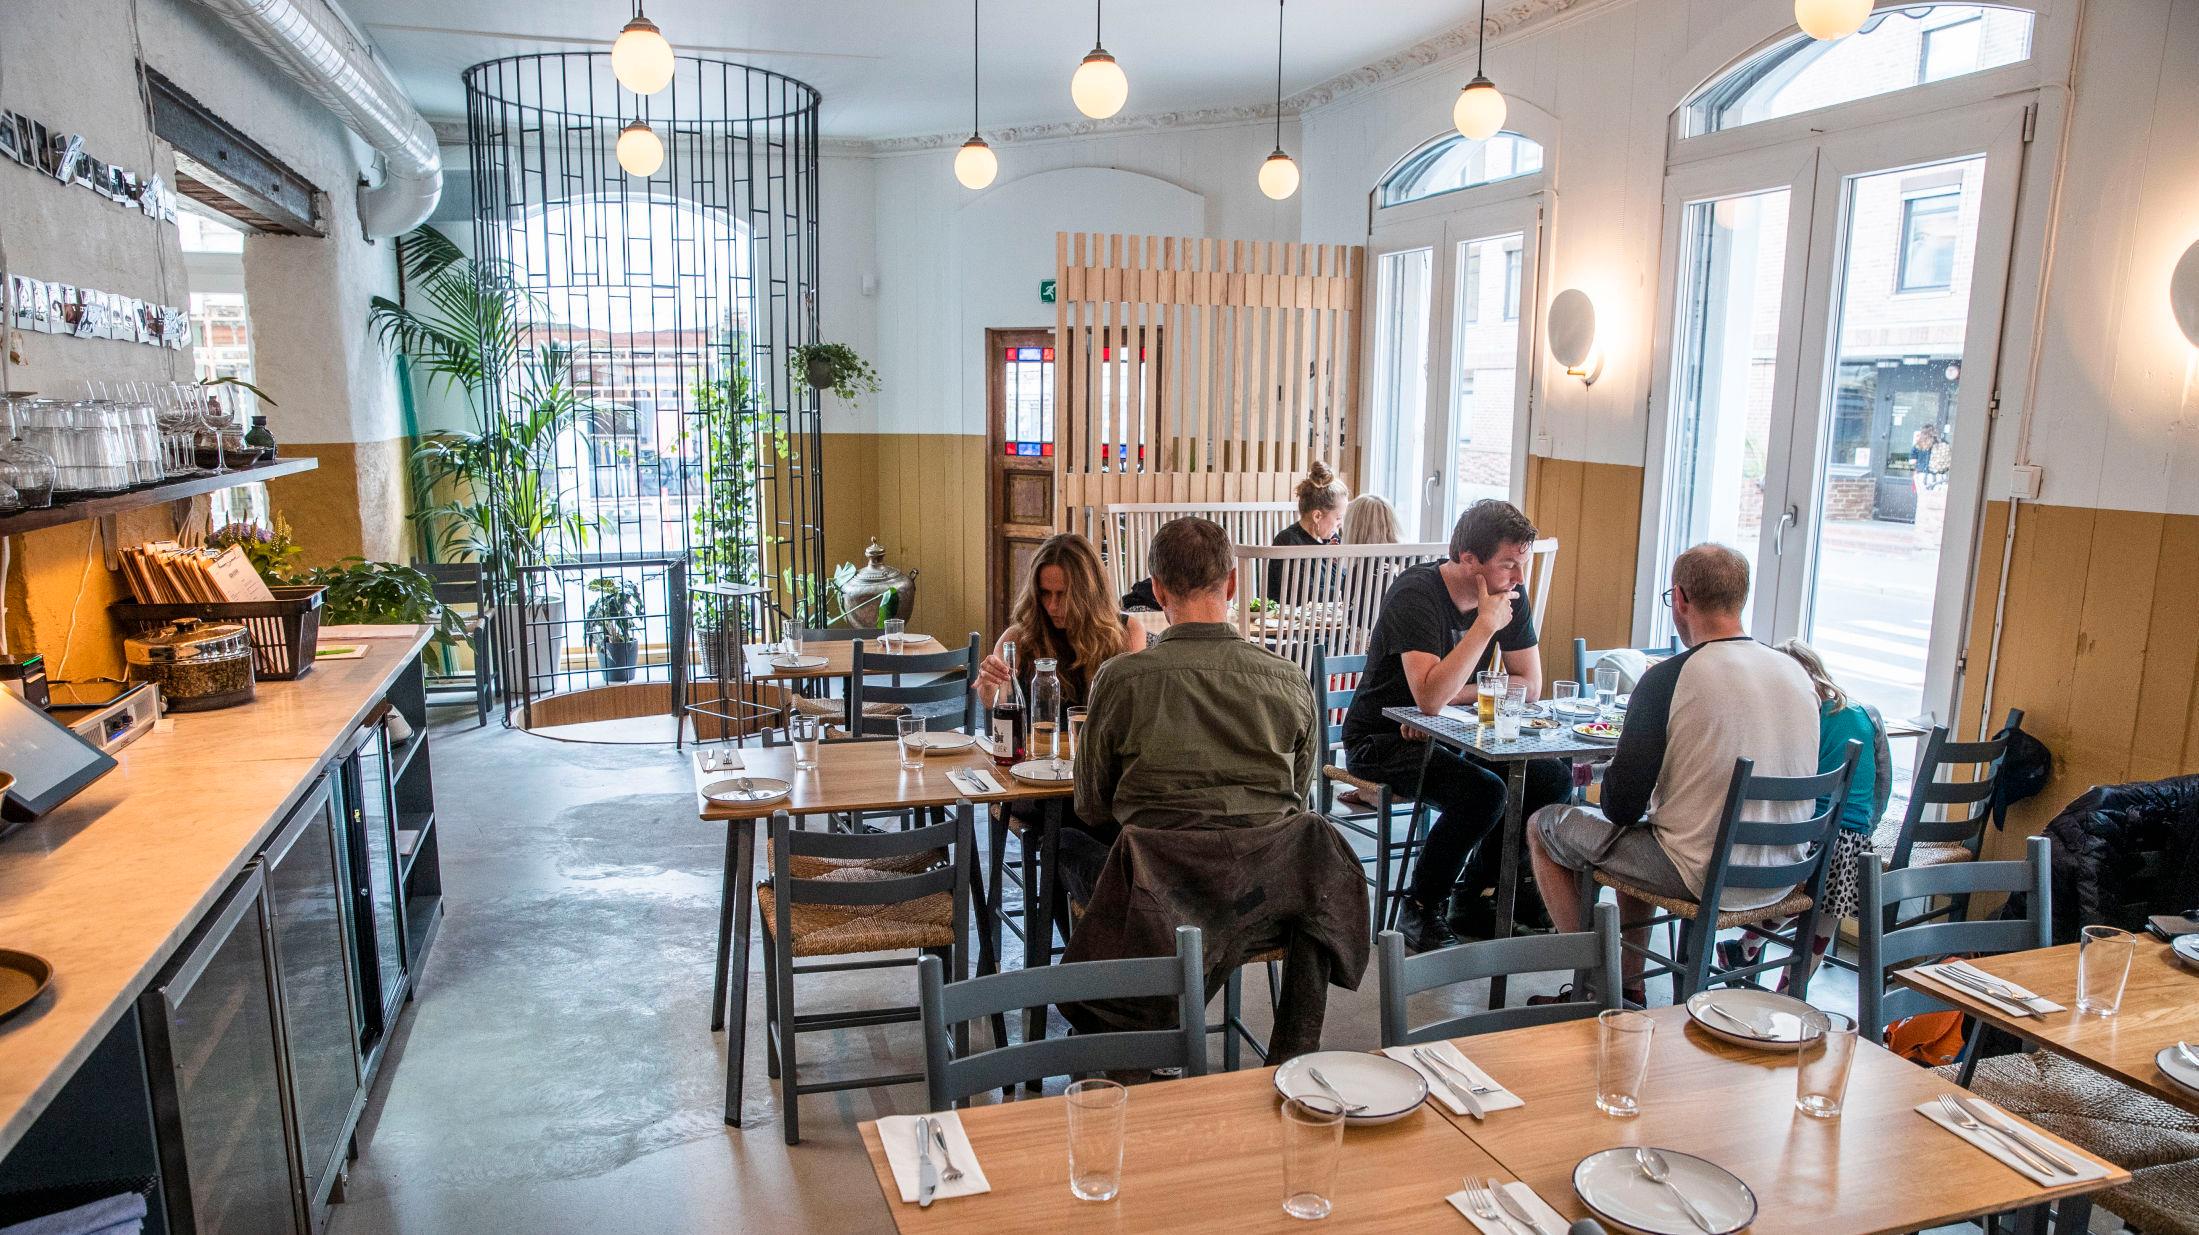 TERNINGKAST 5: Anmelderen mener det både er billig og godt på meze-restauranten Ben Reddik på Grünerløkka i Oslo. Foto: Frode Hansen/VG